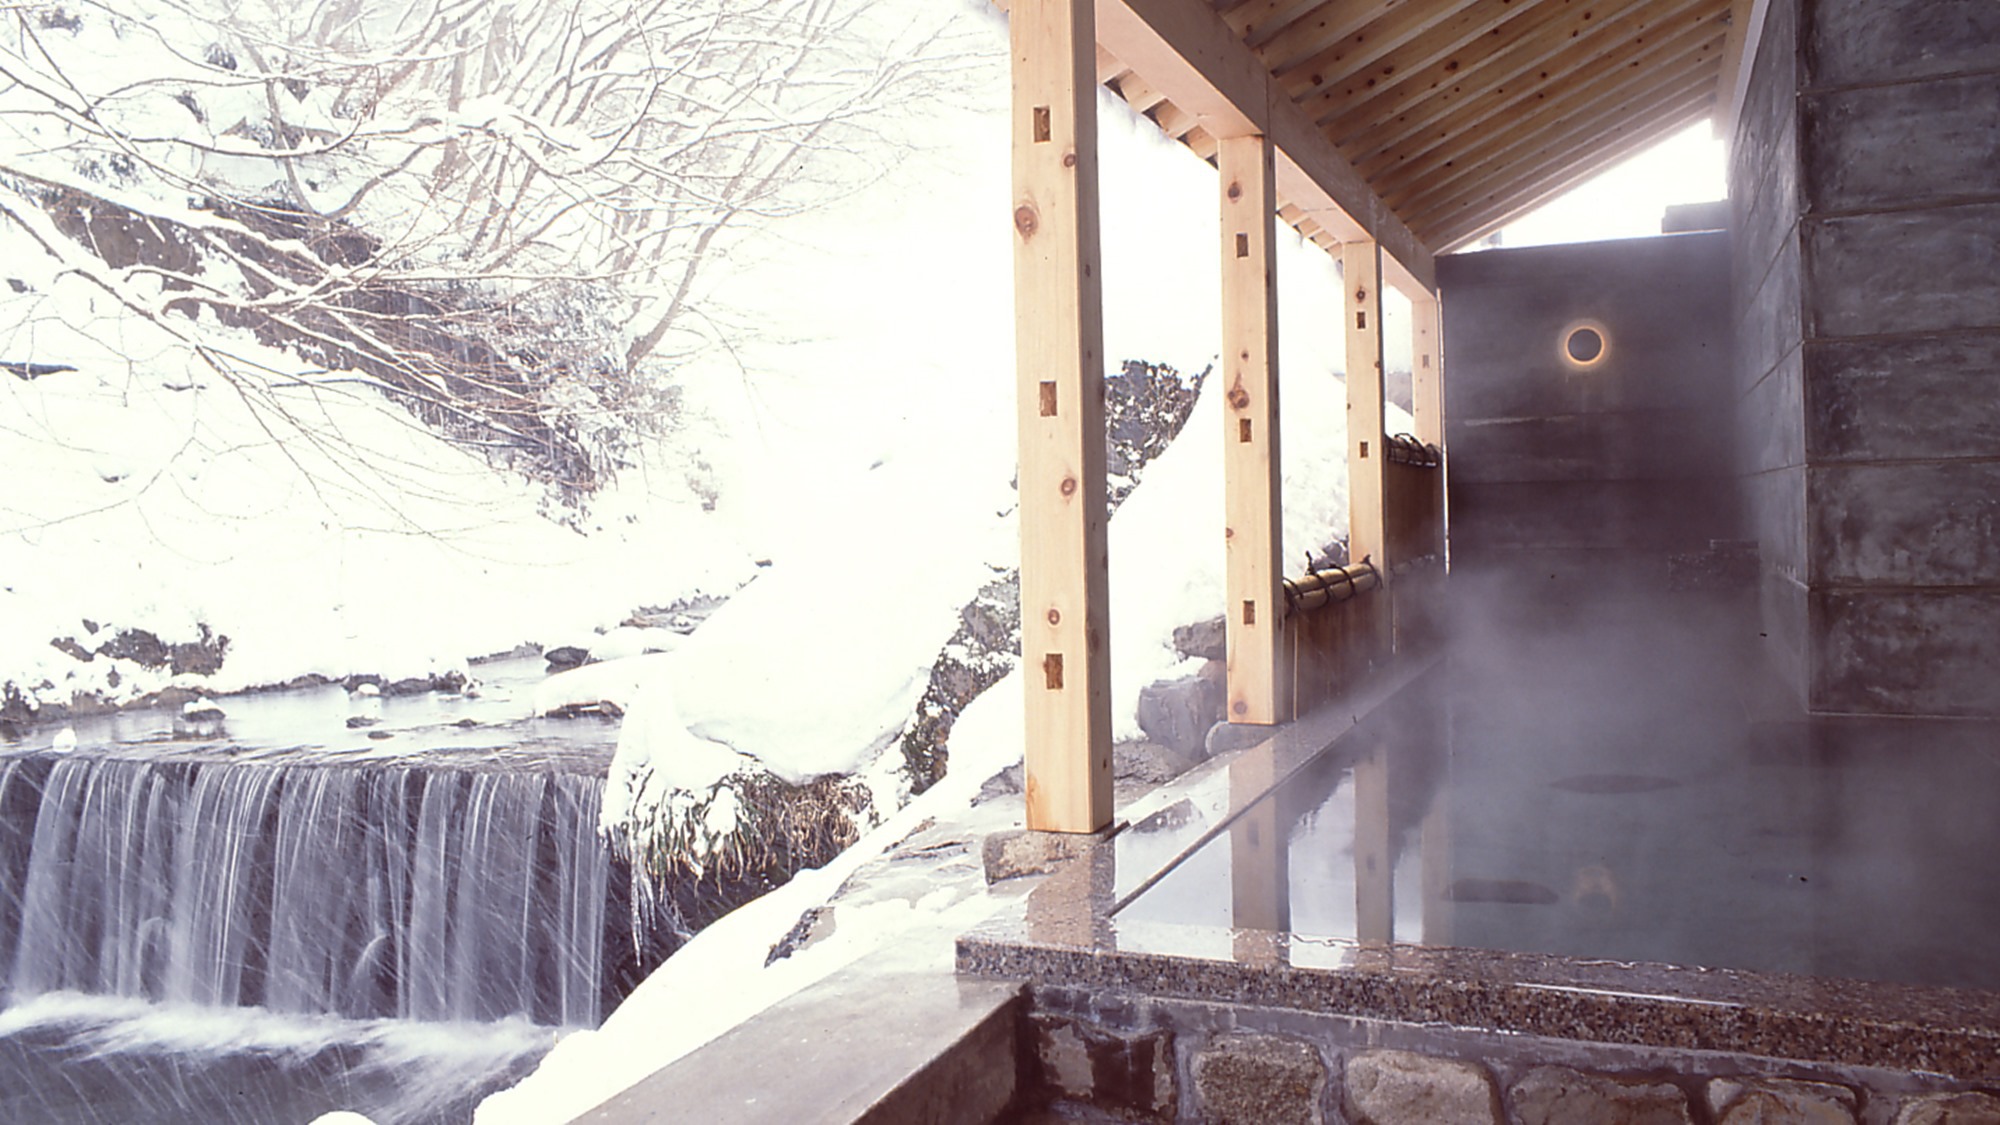 雪景色の露天風呂